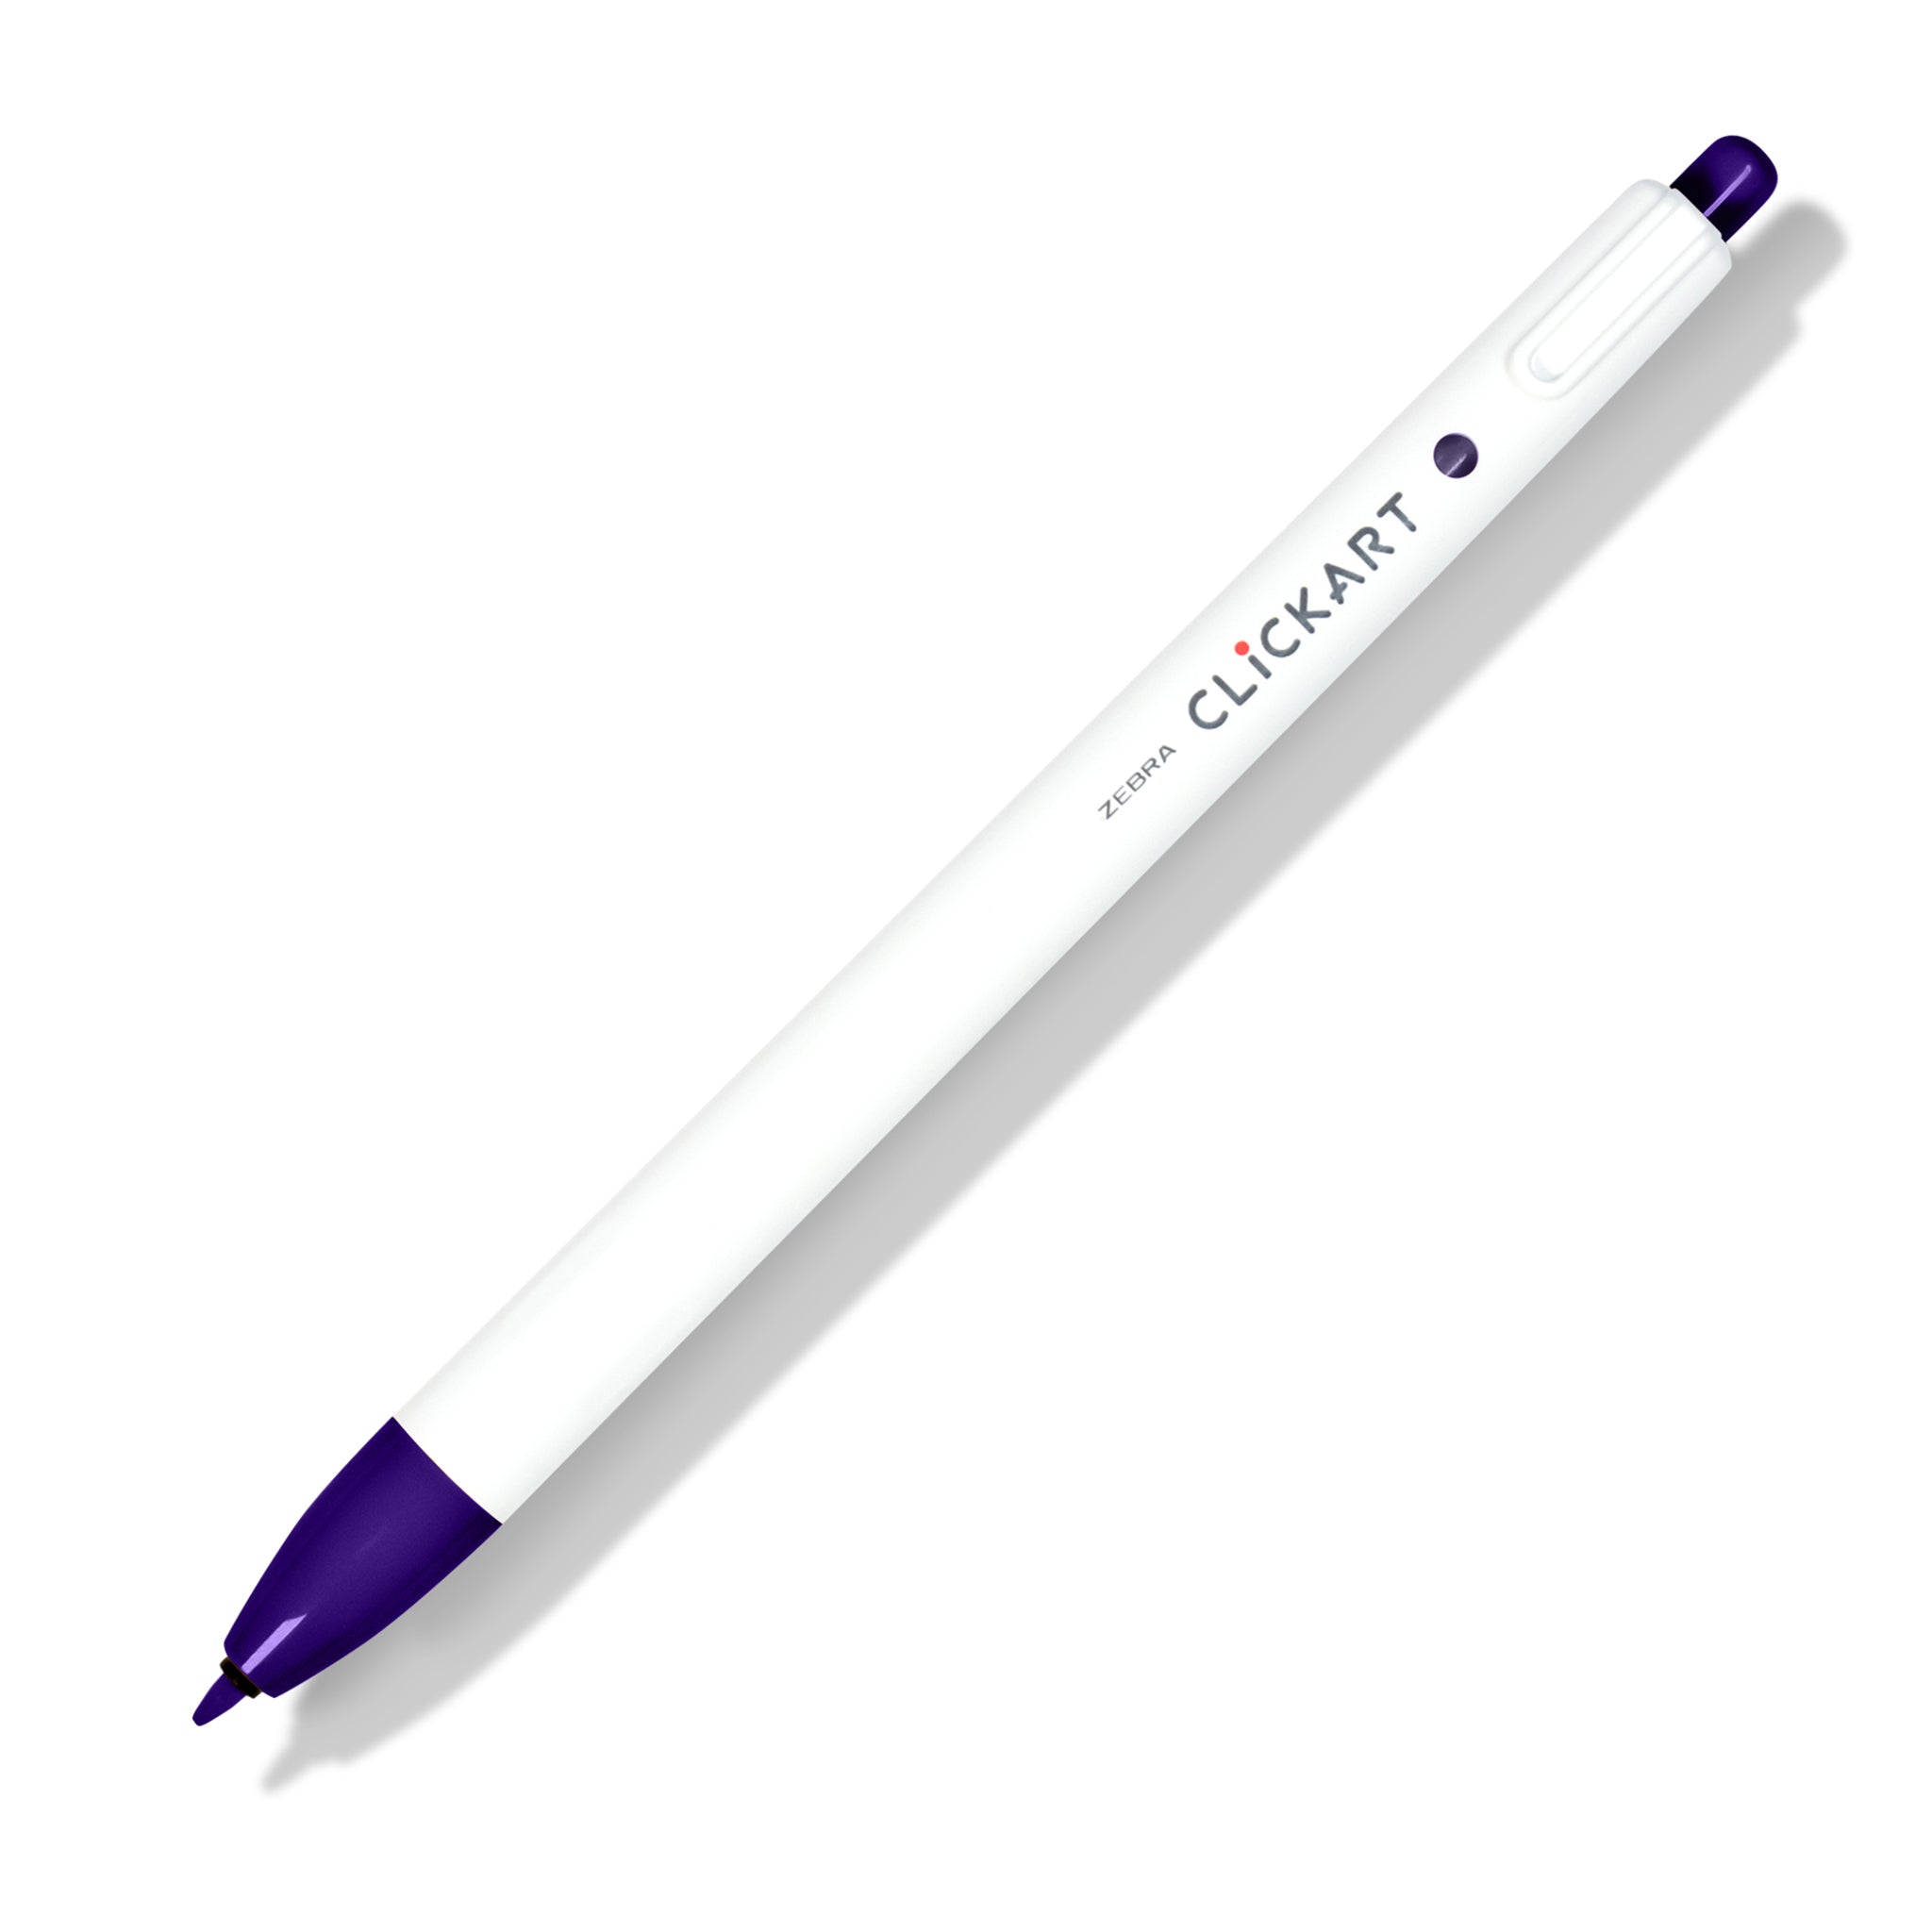 https://www.clothandpaper.com/cdn/shop/files/zebra-clickart-retractable-marker-pen-purple.jpg?v=1692100775